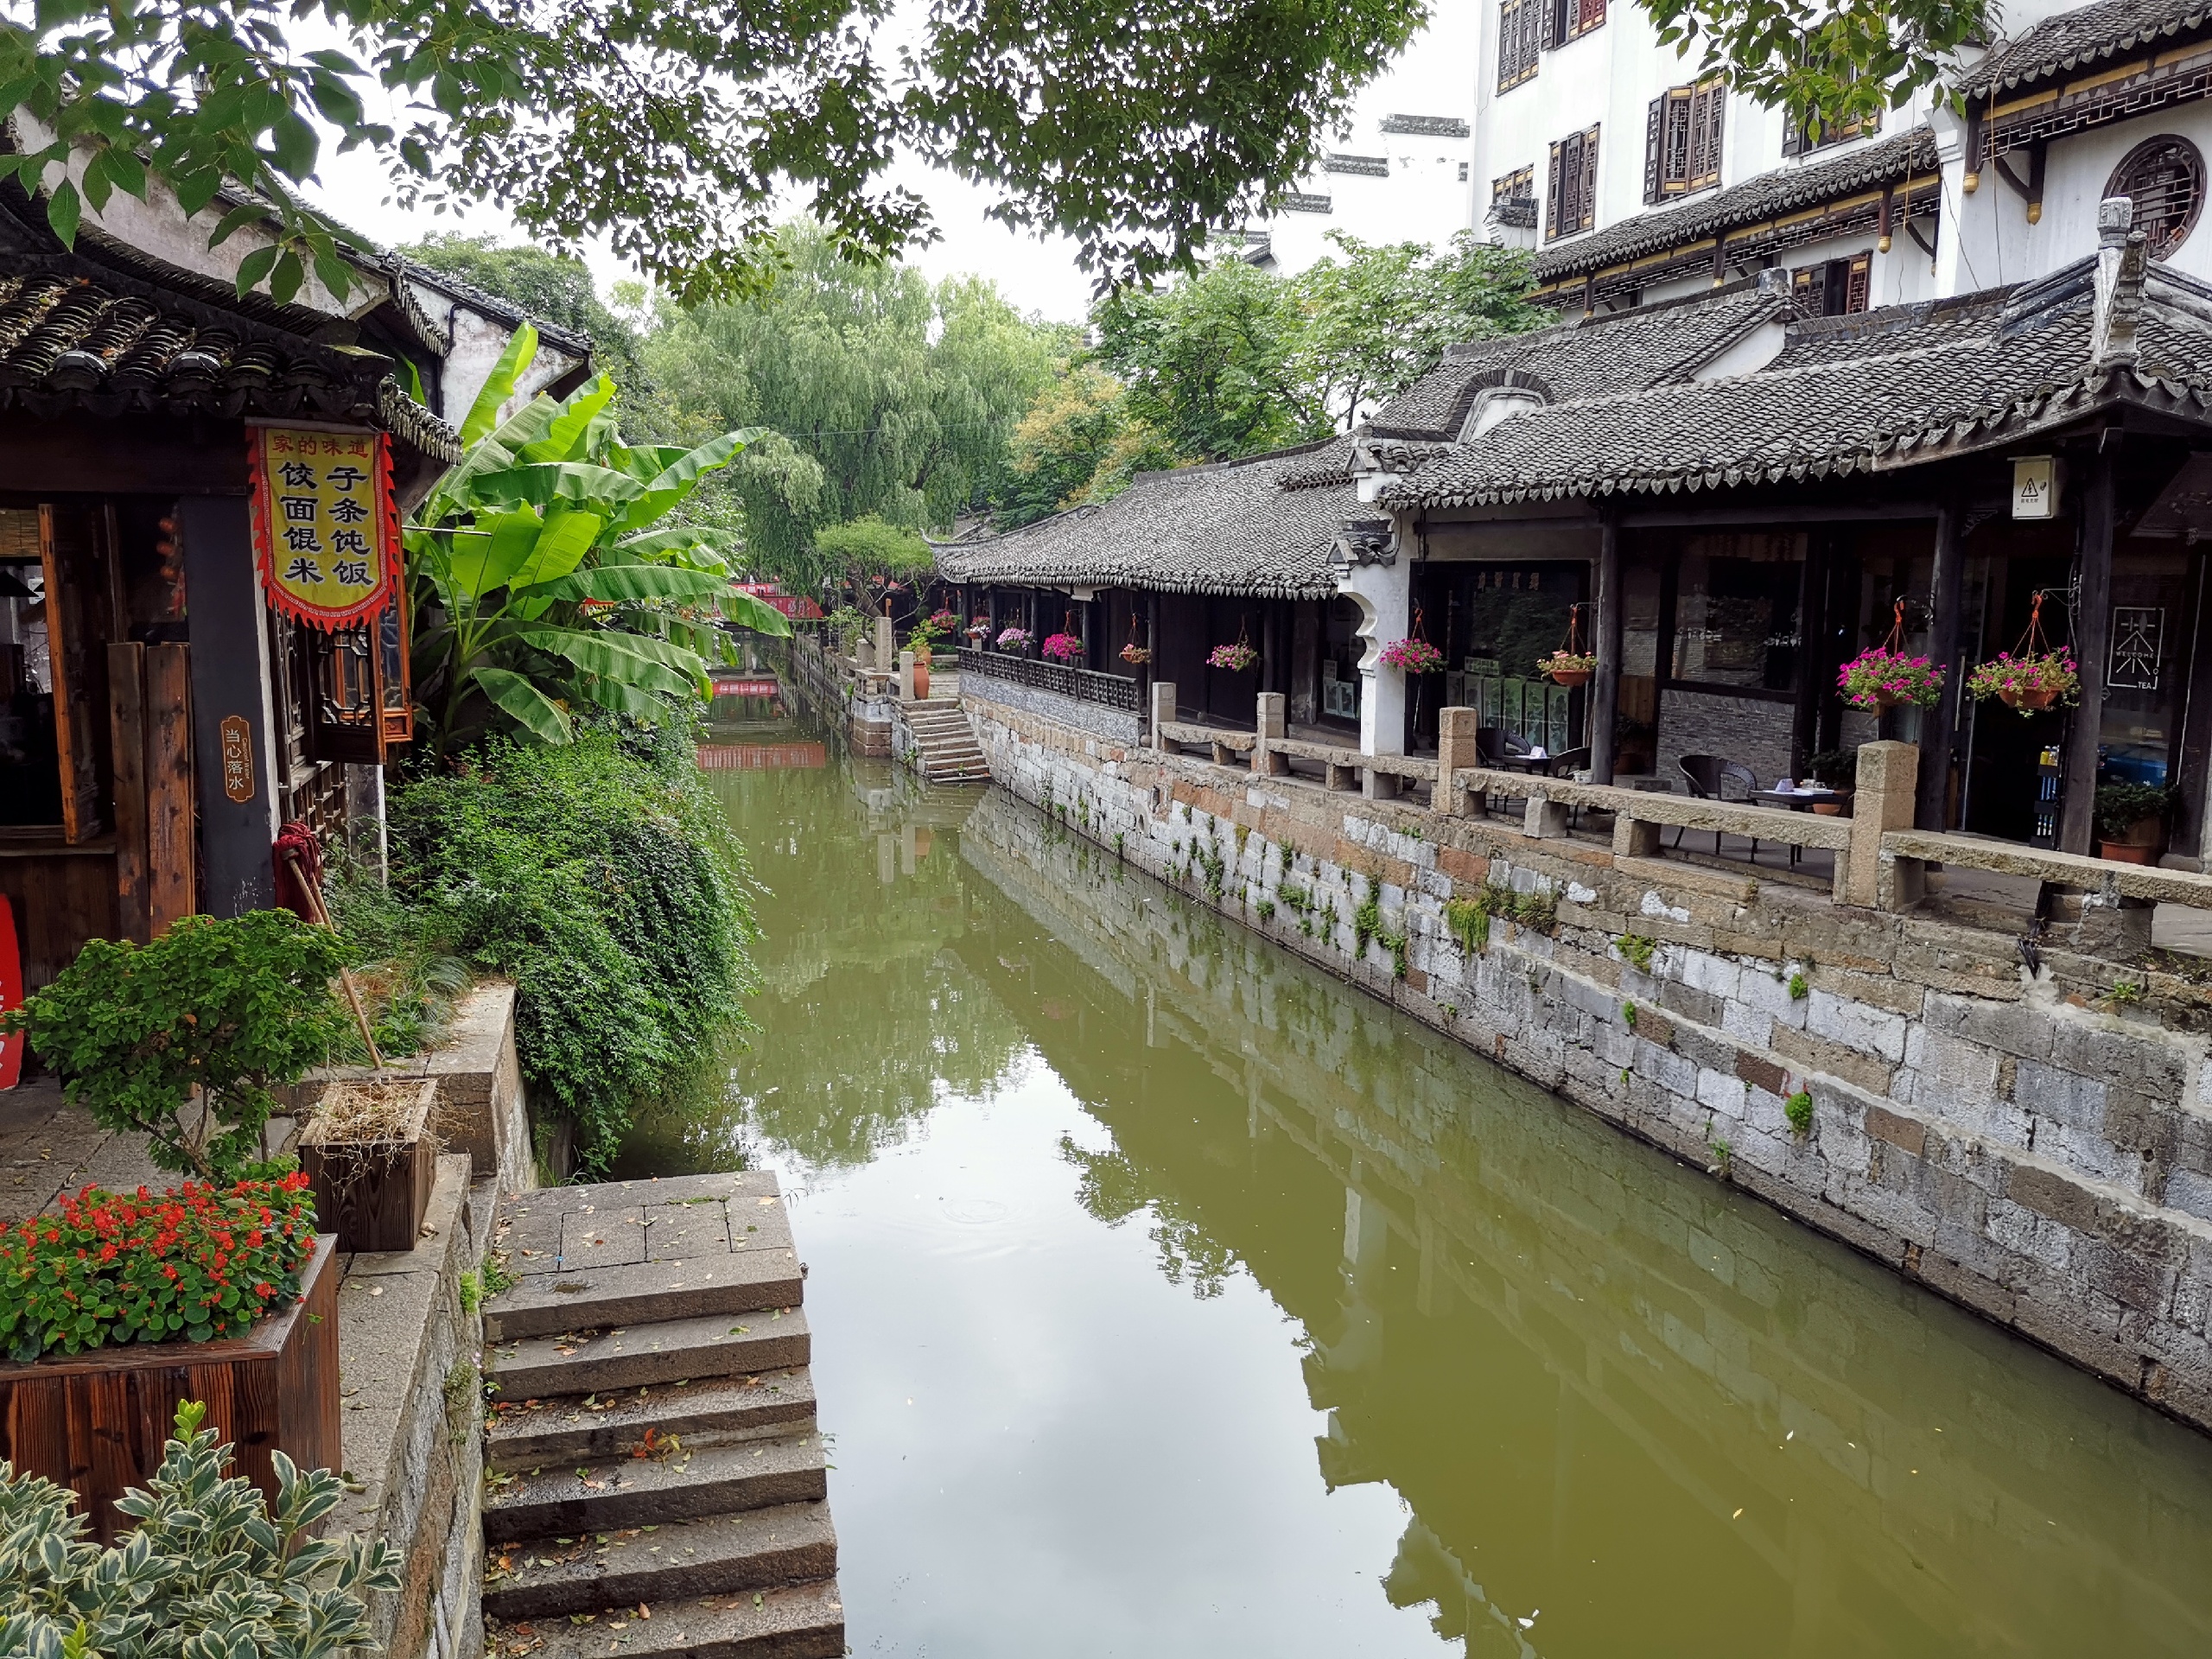 听说这是上海最后一个保留较完好的一个古镇-枫泾古镇